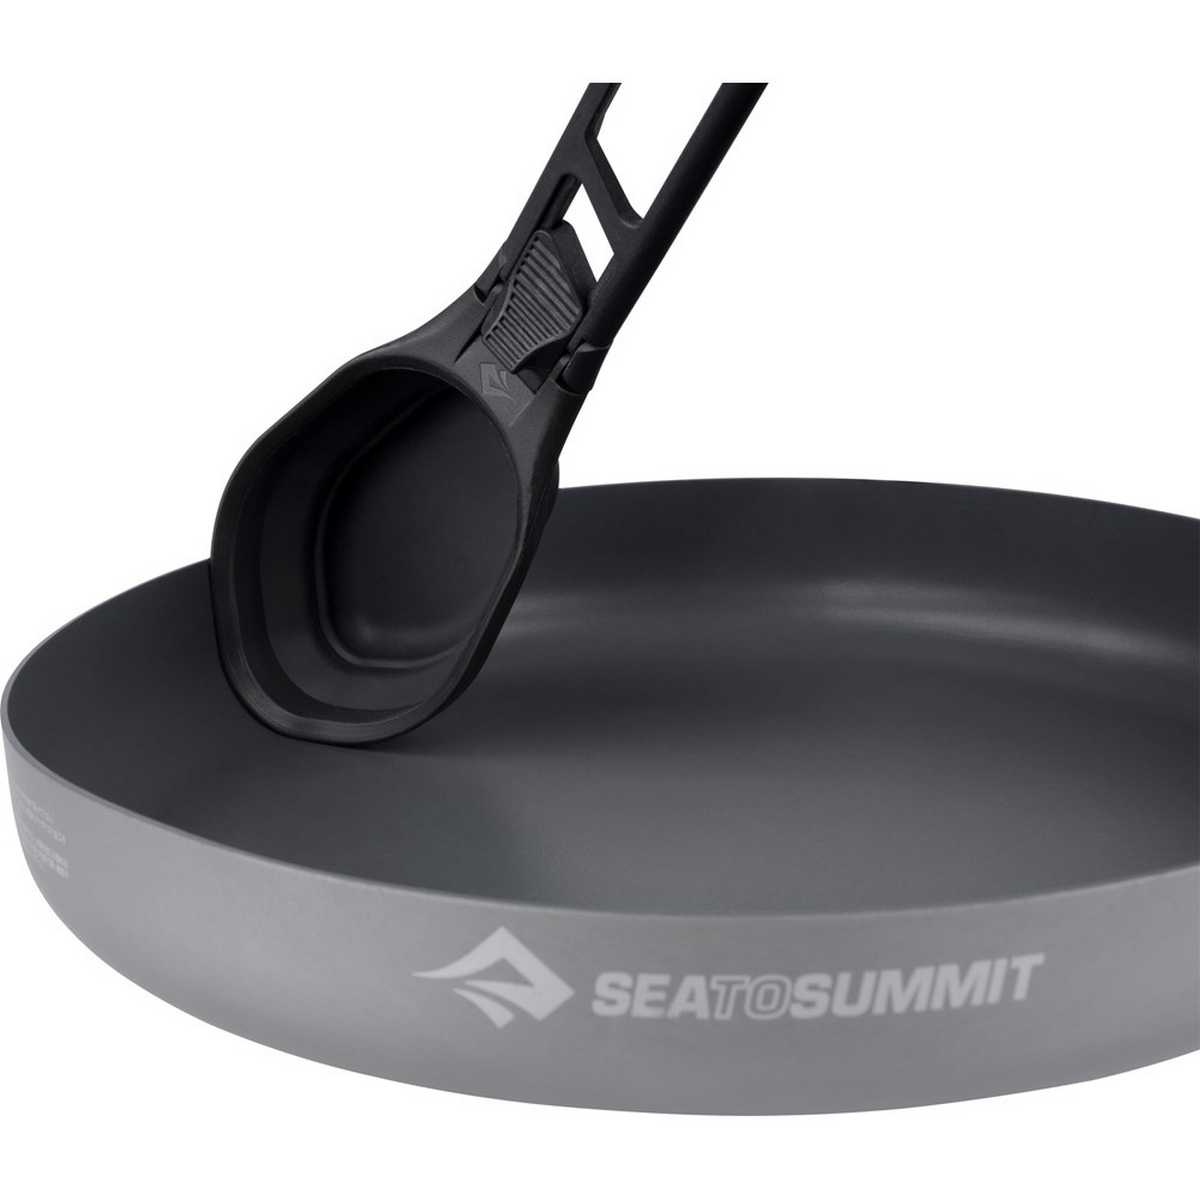 Sea to Summit Folding serving spoon - Grydeske